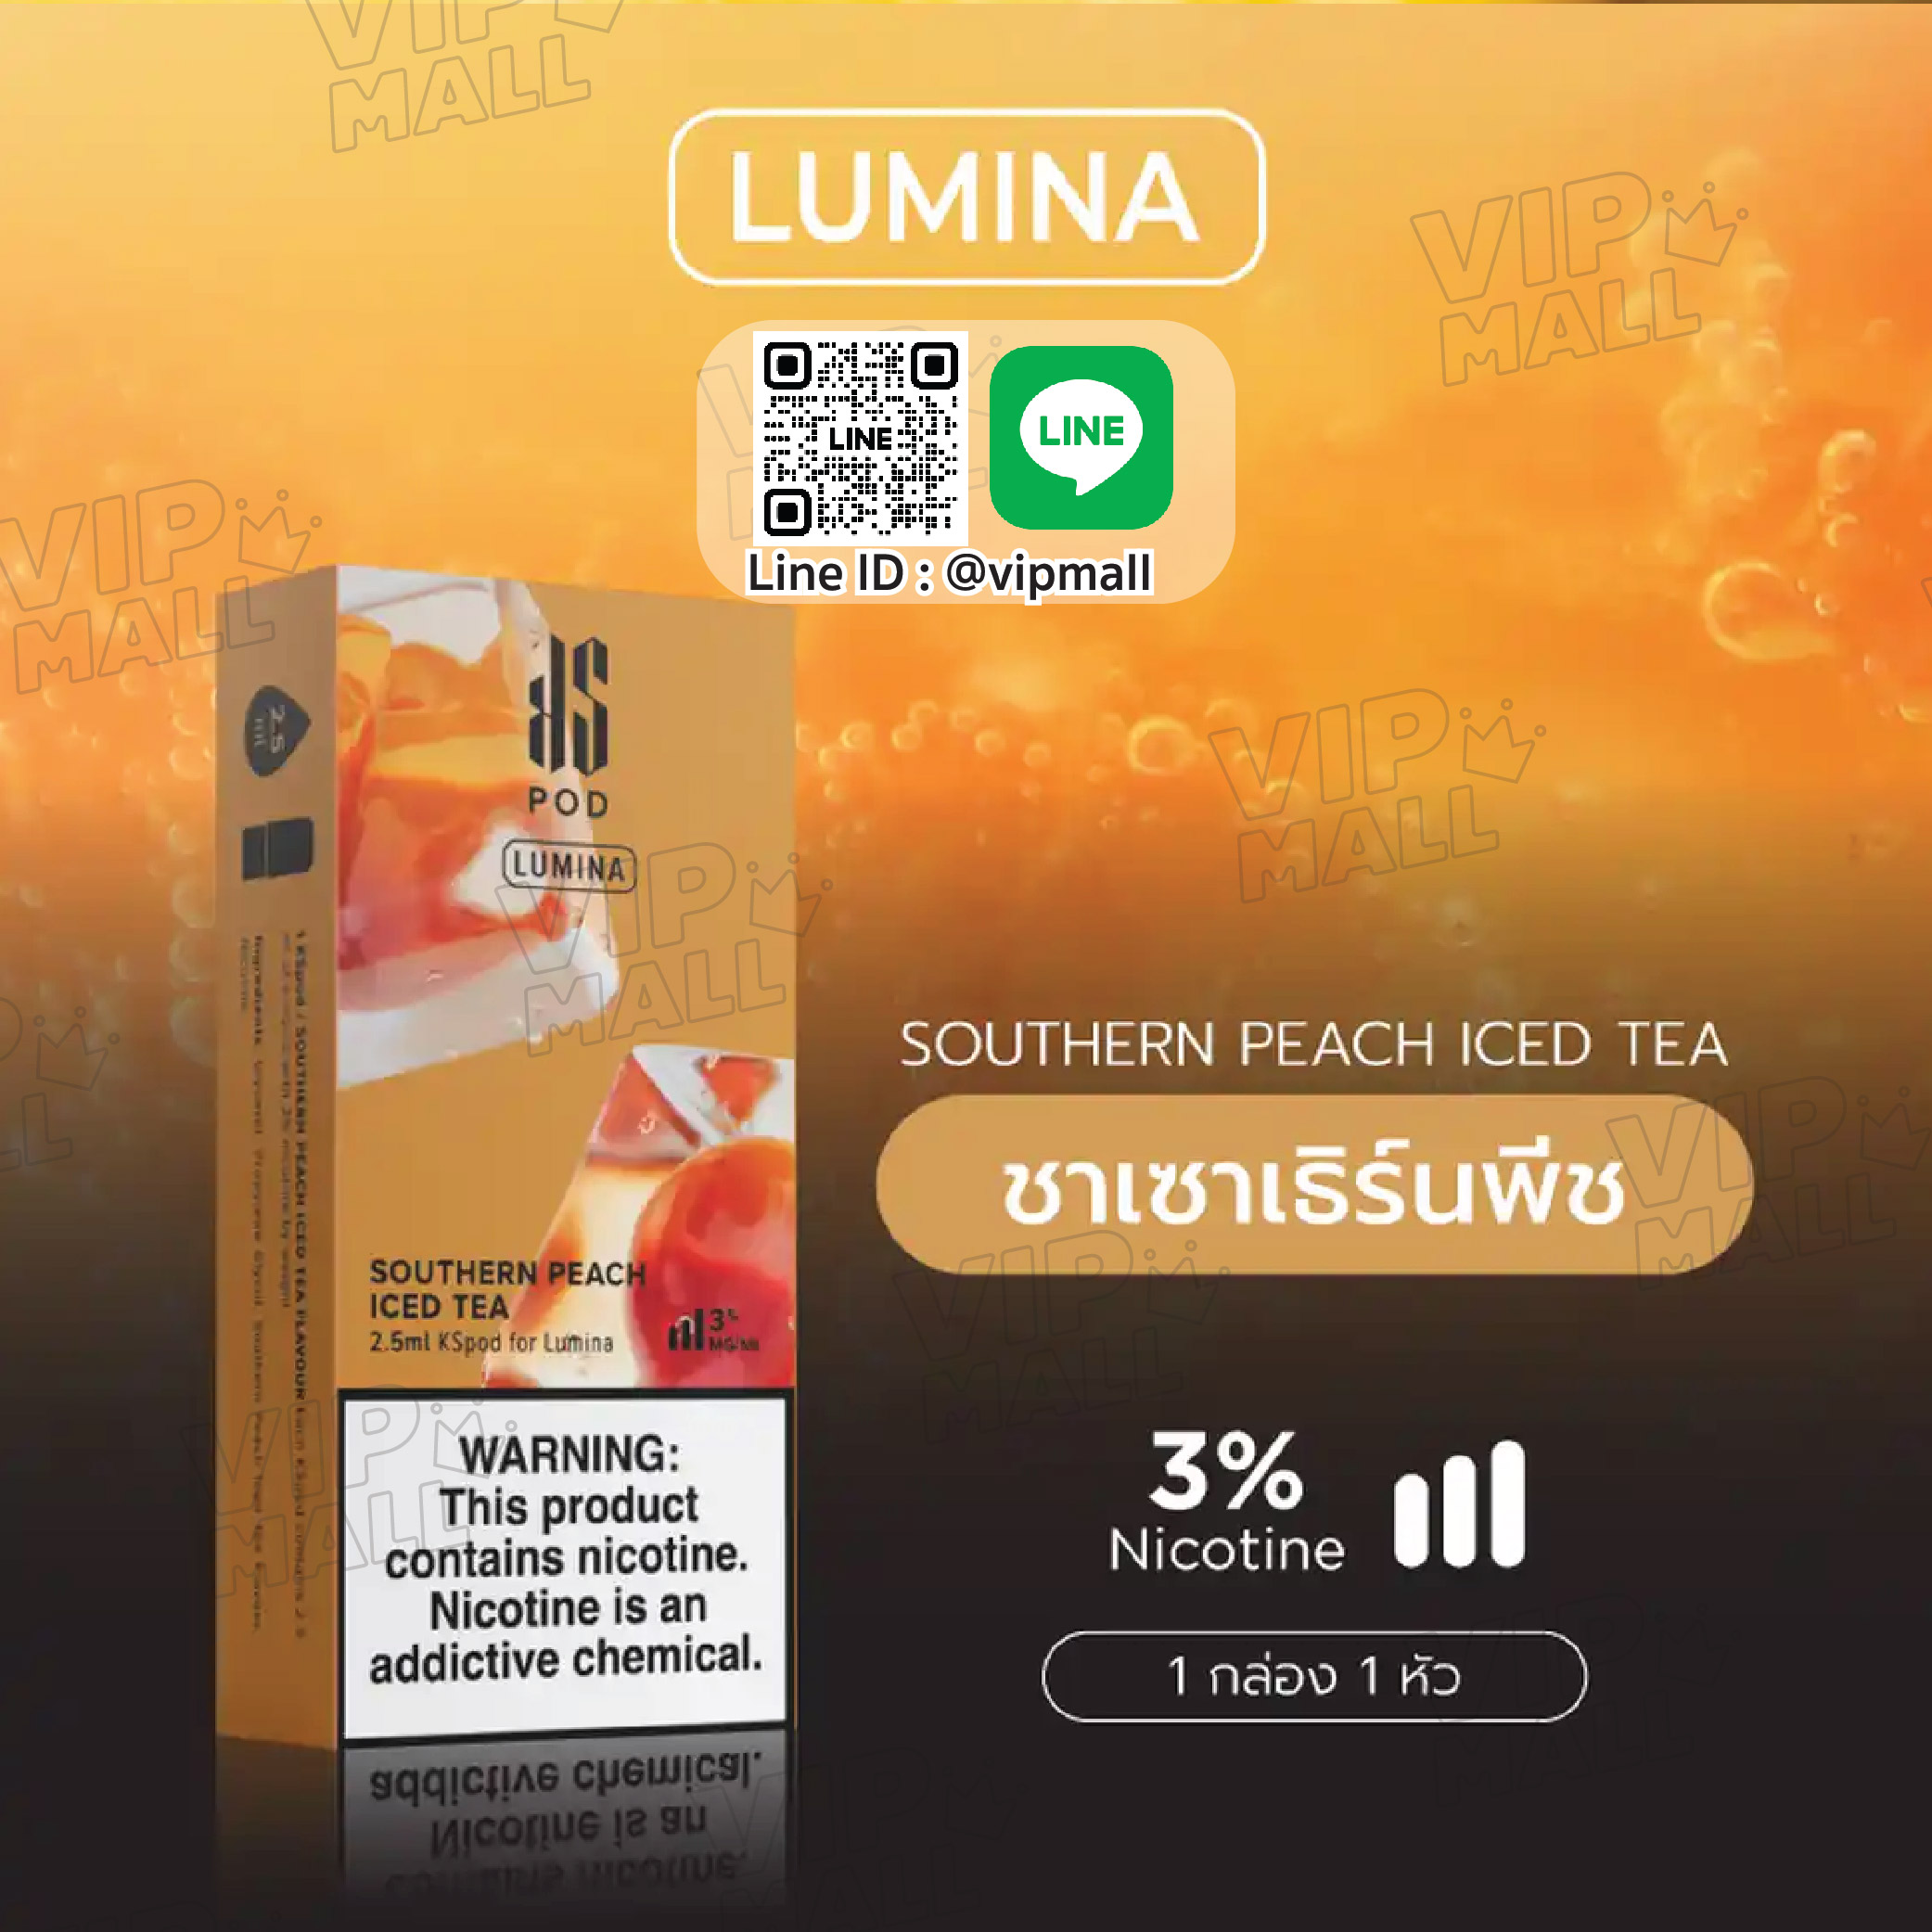 KS Lumina Pod กลิ่น ชาพีช หัวพอตน้ำยา คนยุคใหม่ ที่ผสมผสานความผ่อนคลายของชา กับผลพีซมาได้อย่างลงตัว ลดความเลี่ยน เพิ่มความหวานแบบเฉพาะตัวมาให้ได้ลอง